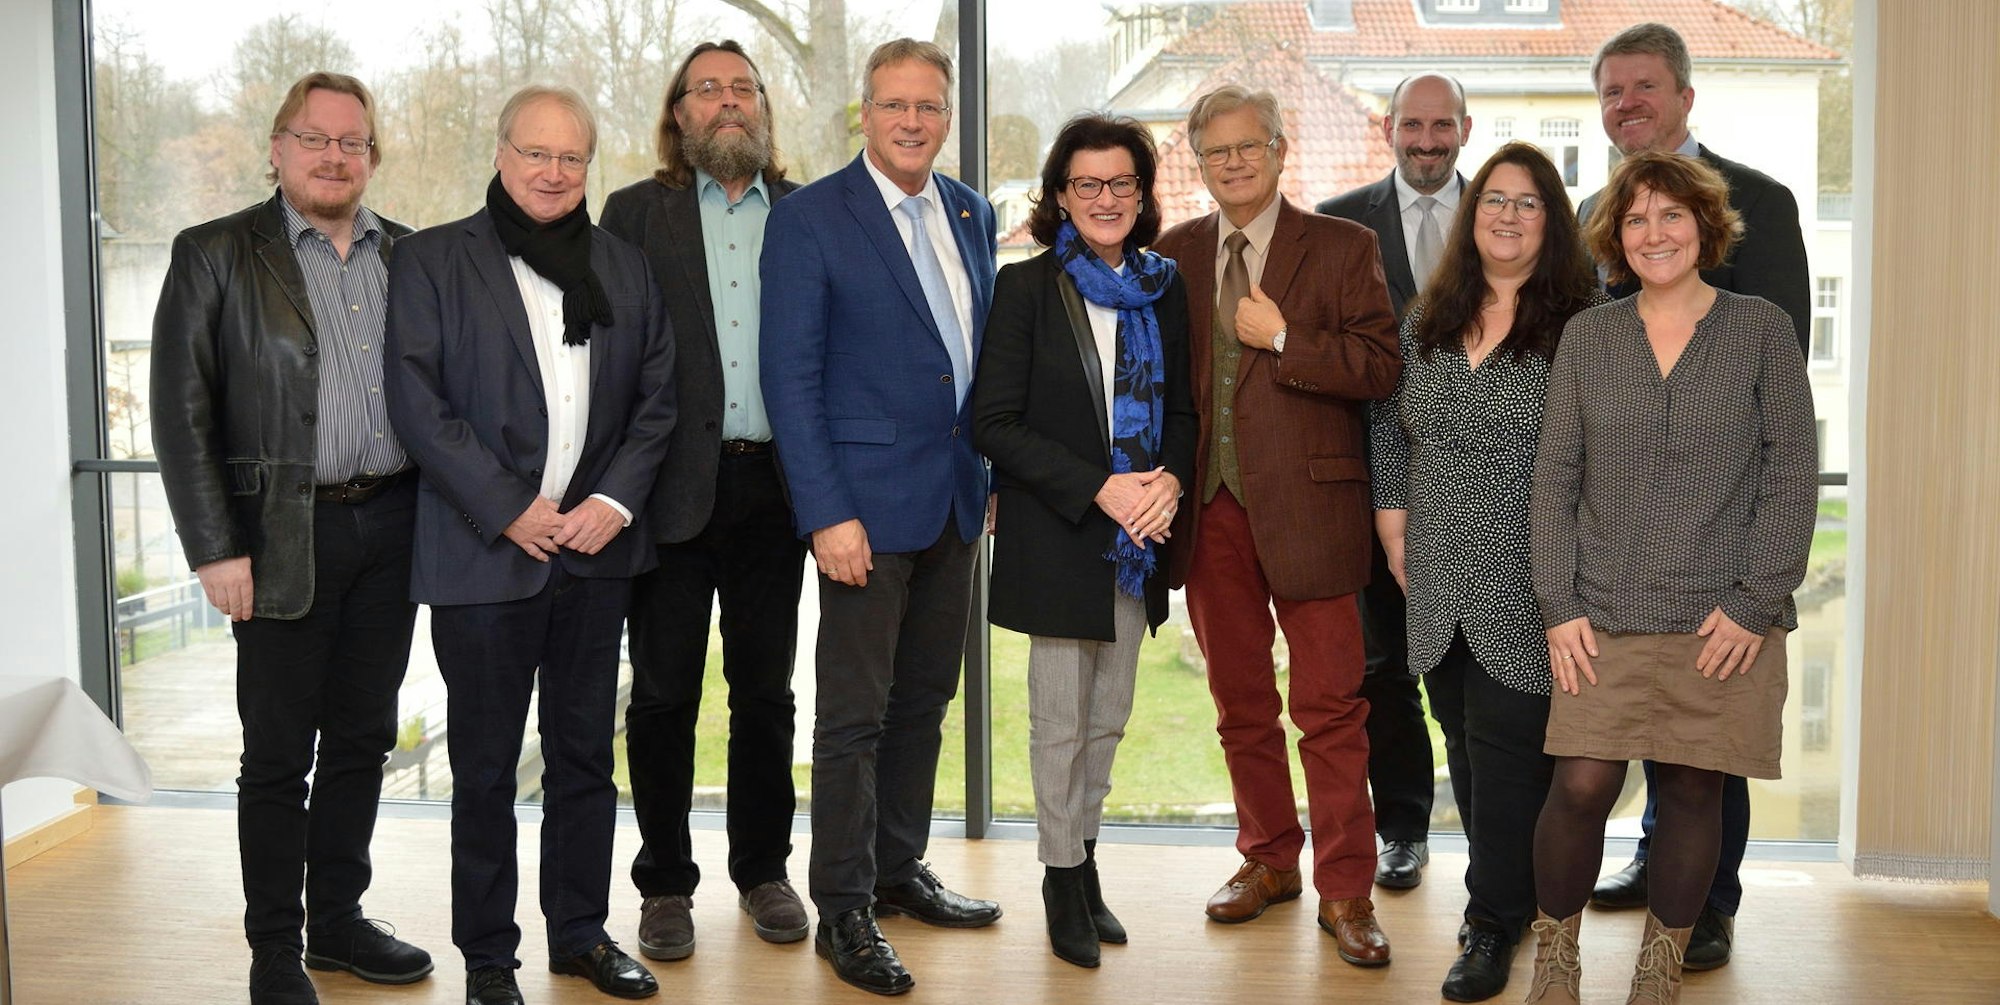 Mit Bürgermeister Mombauer (4. v. l.) sowie den Spitzen von Rat und Verwaltung traf sich Gisela Walsken (5. v. l.) am Mittwochnachmittag in der Bildungswerkstatt von Schloss Eulenbroich.